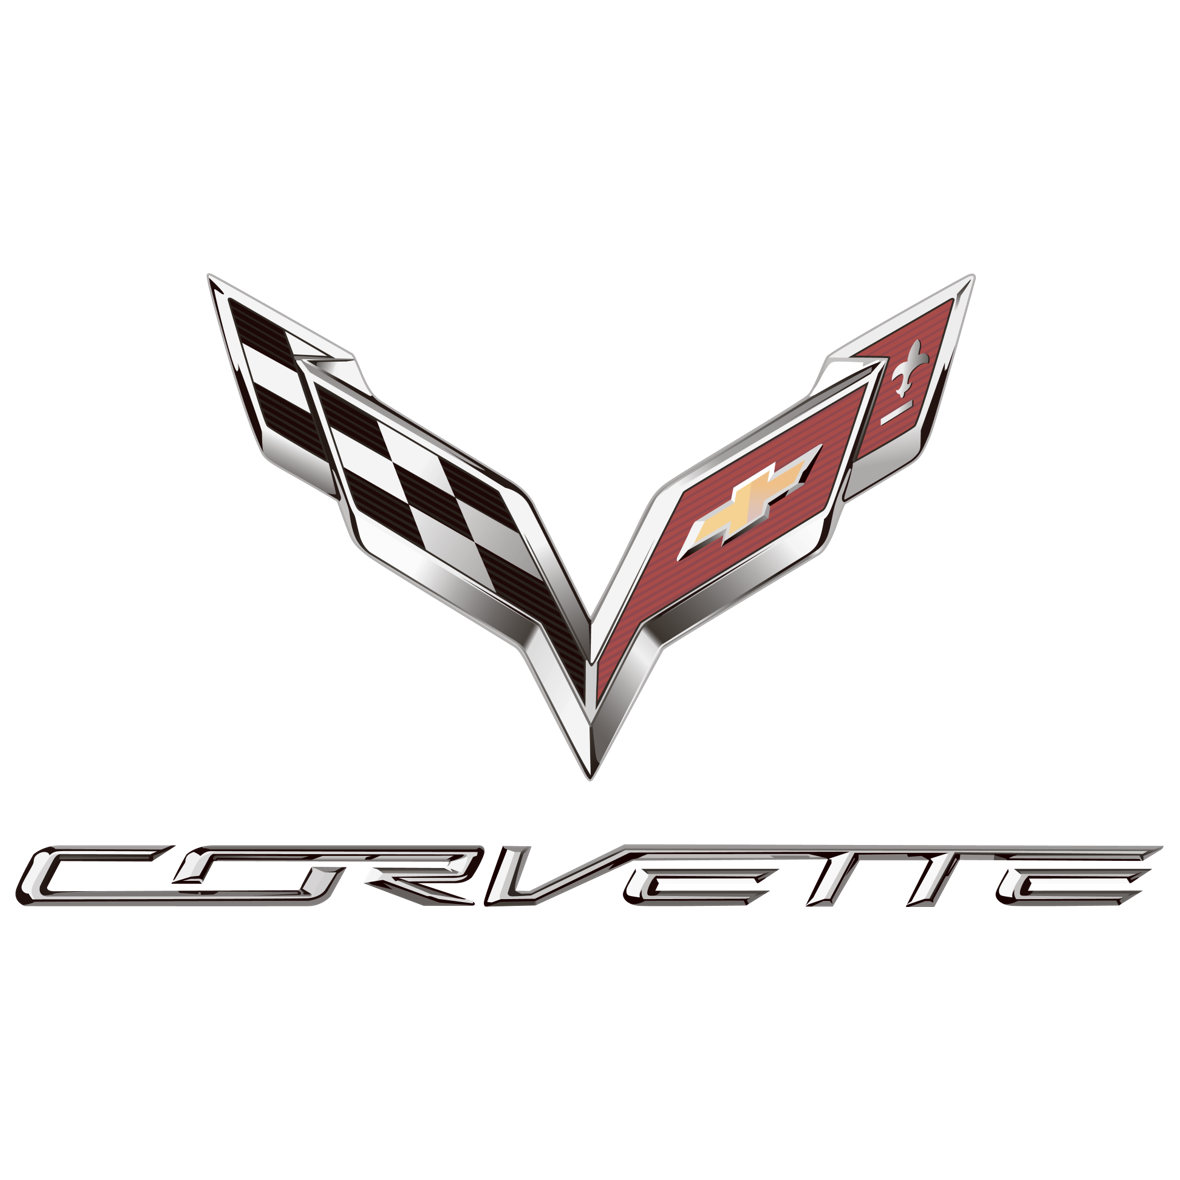 Corvette logo Sportwagen mieten im Kreis Düsseldorf und Köln